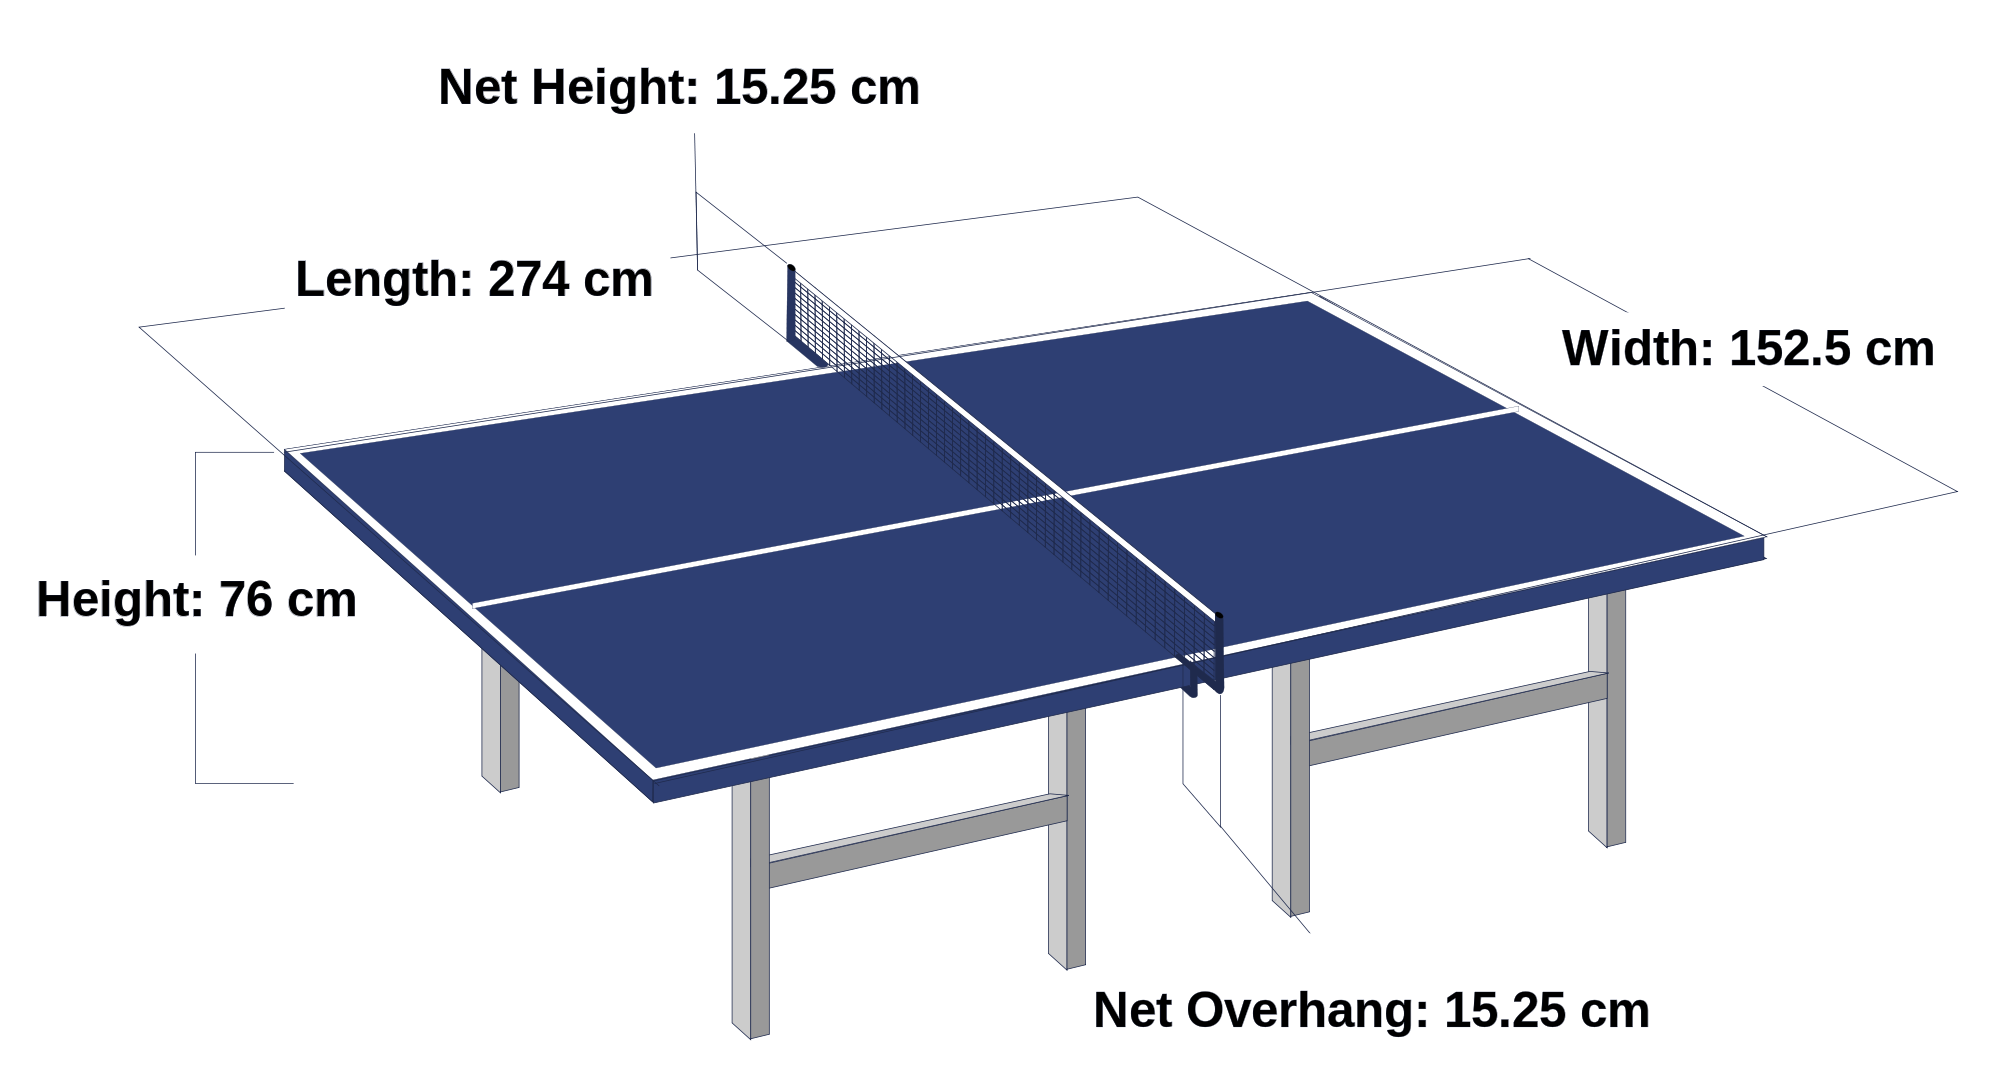 Игра настольный теннис размер какой. Размеры теннисного стола для настольного тенниса стандарт. Размеры настольного теннисного стола стандарт. Размер теннисного стола для настольного тенниса. Габариты теннисного стола.